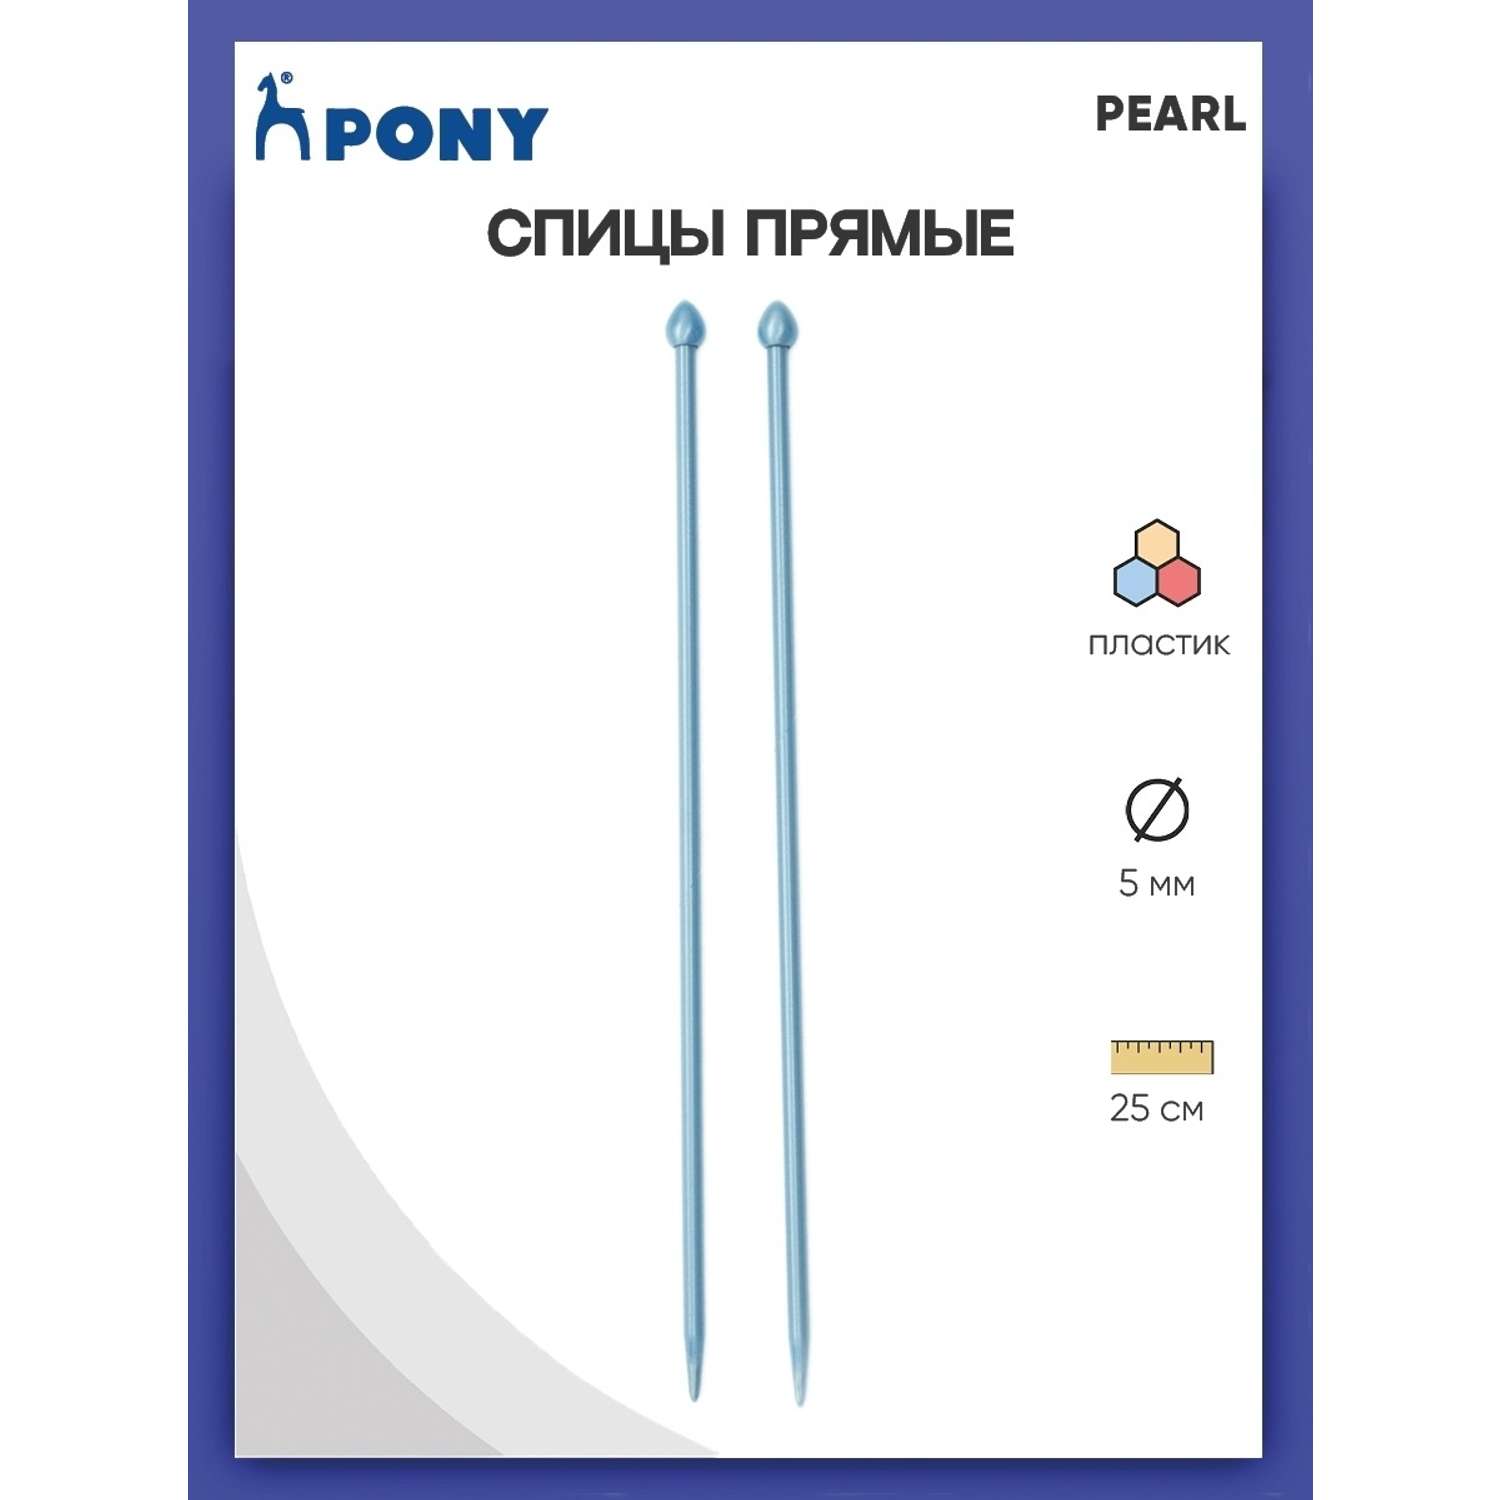 Спицы прямые Pony пластиковые для начинающих PEARL 5 мм 25 см синие 31630 - фото 1